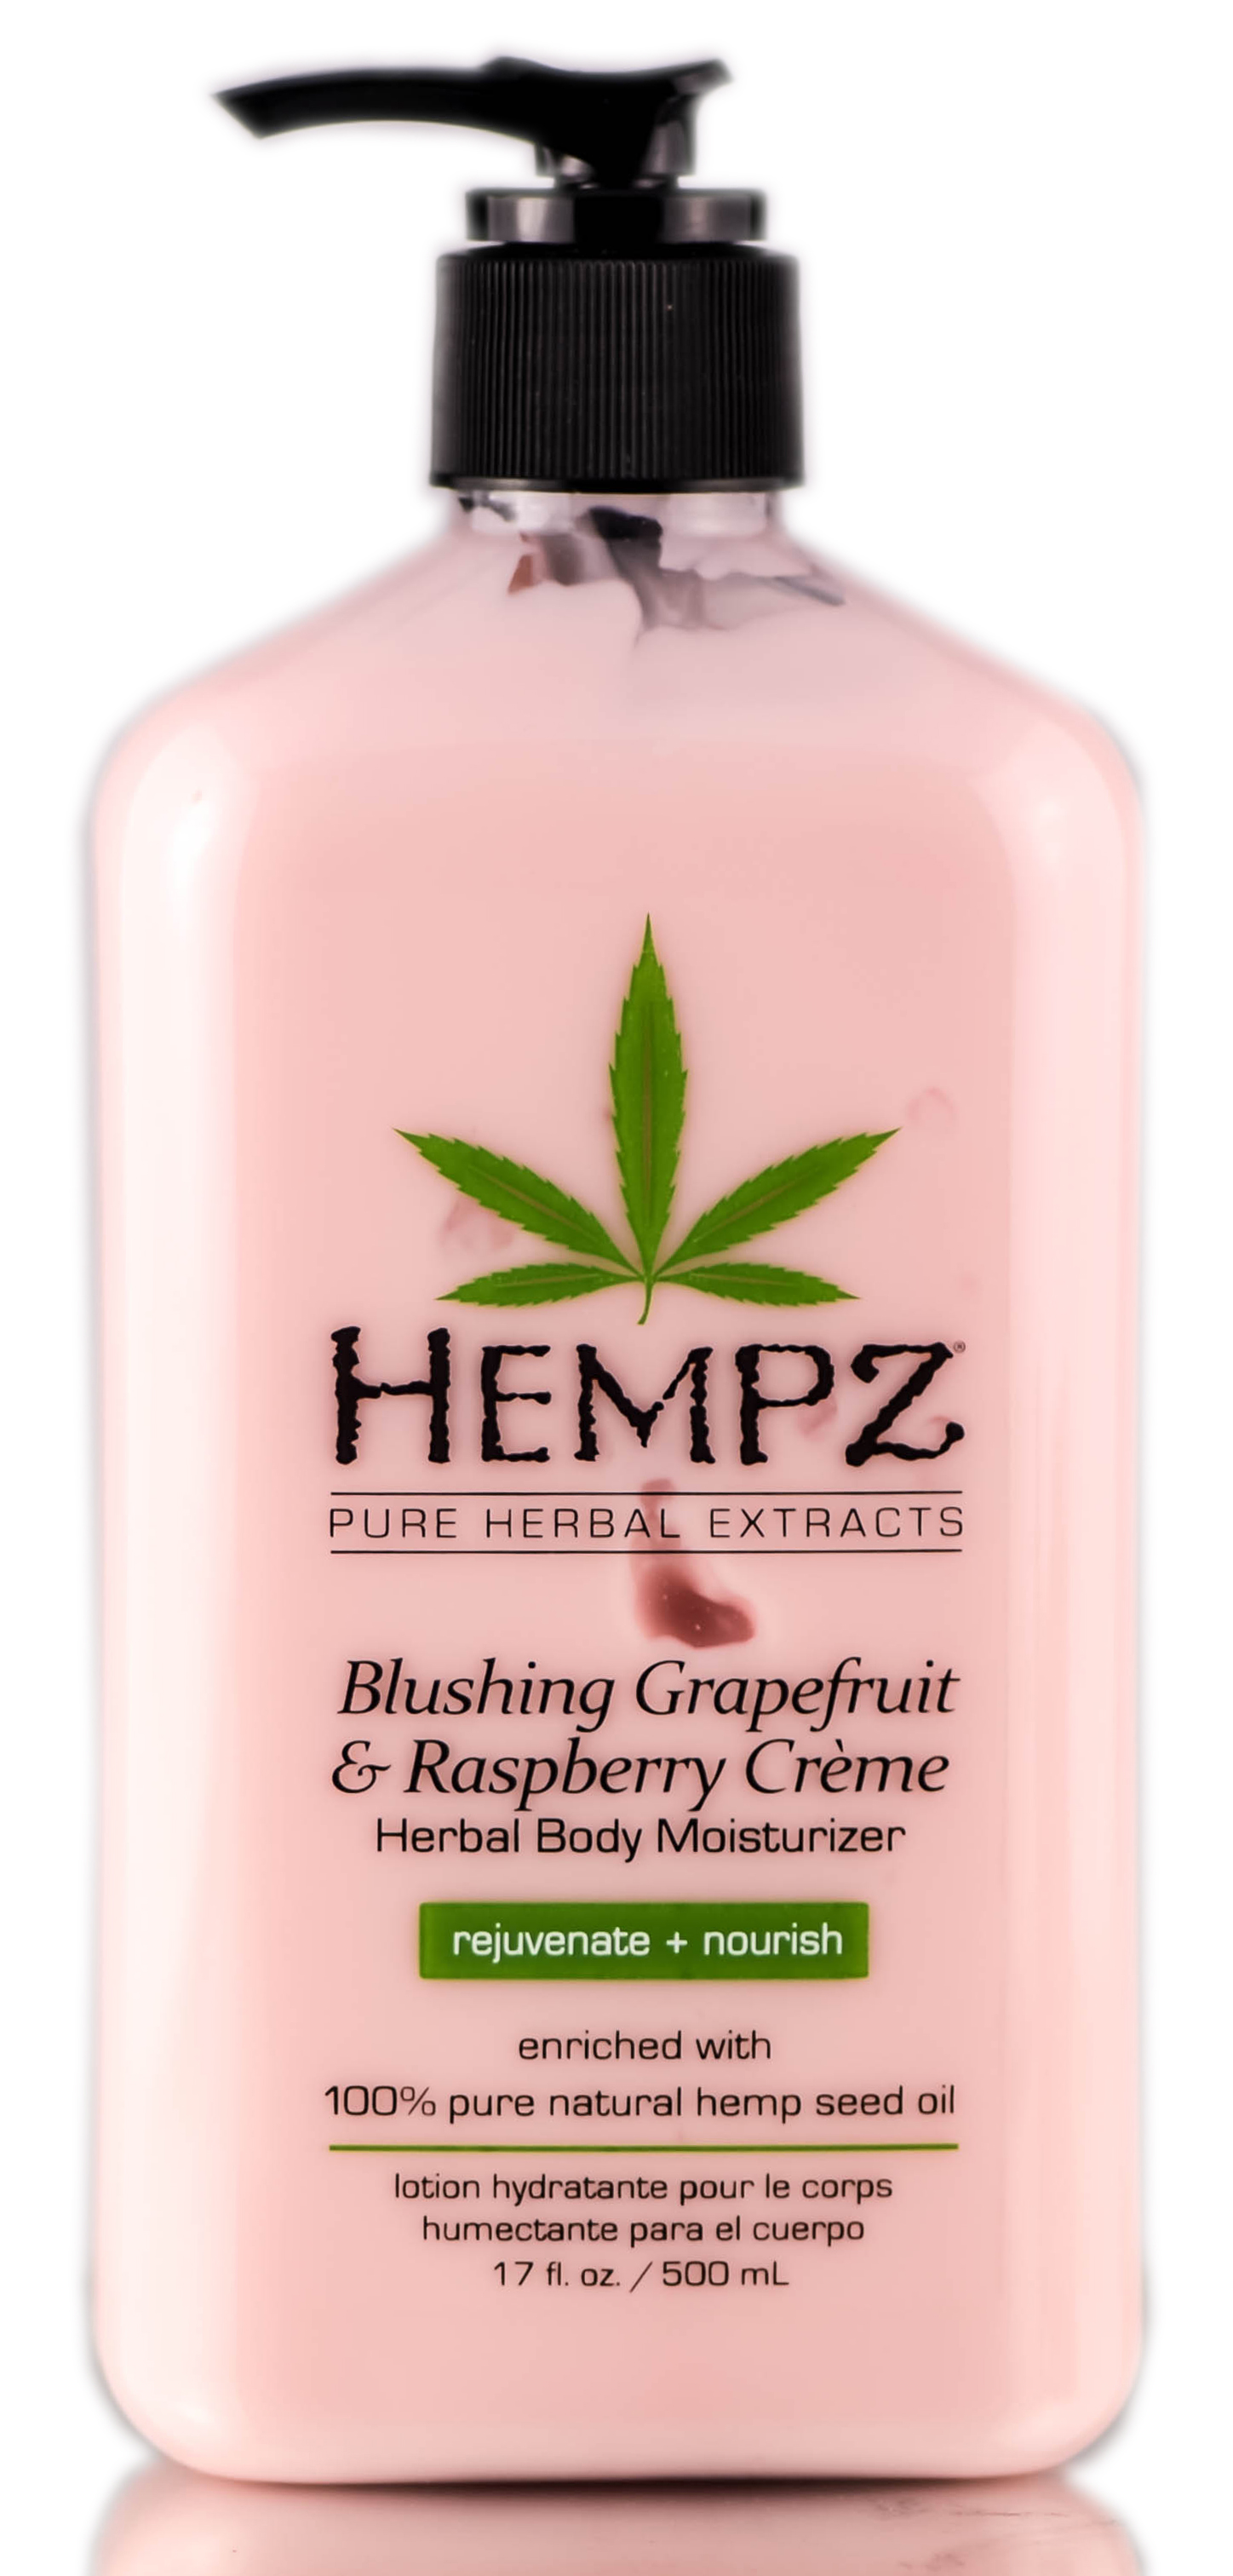 Hempz Blushing Grapefruit & Rasberry Creme Herbal Body Moisturizer - 17 oz - image 1 of 2